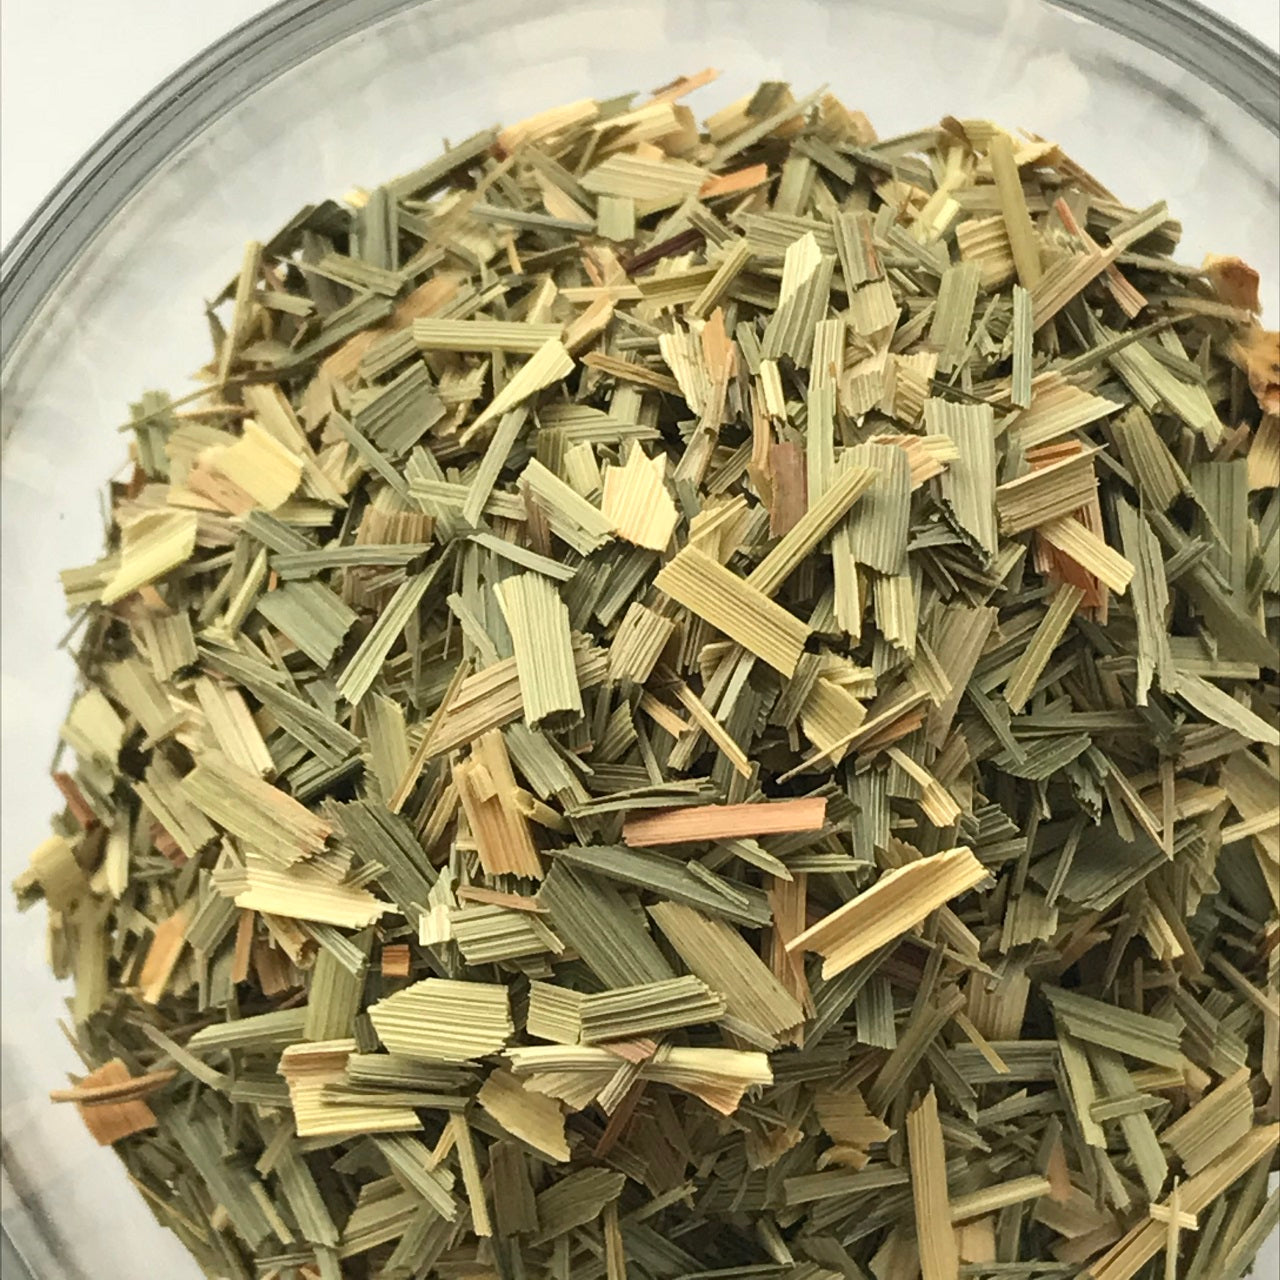 500g lemongrass